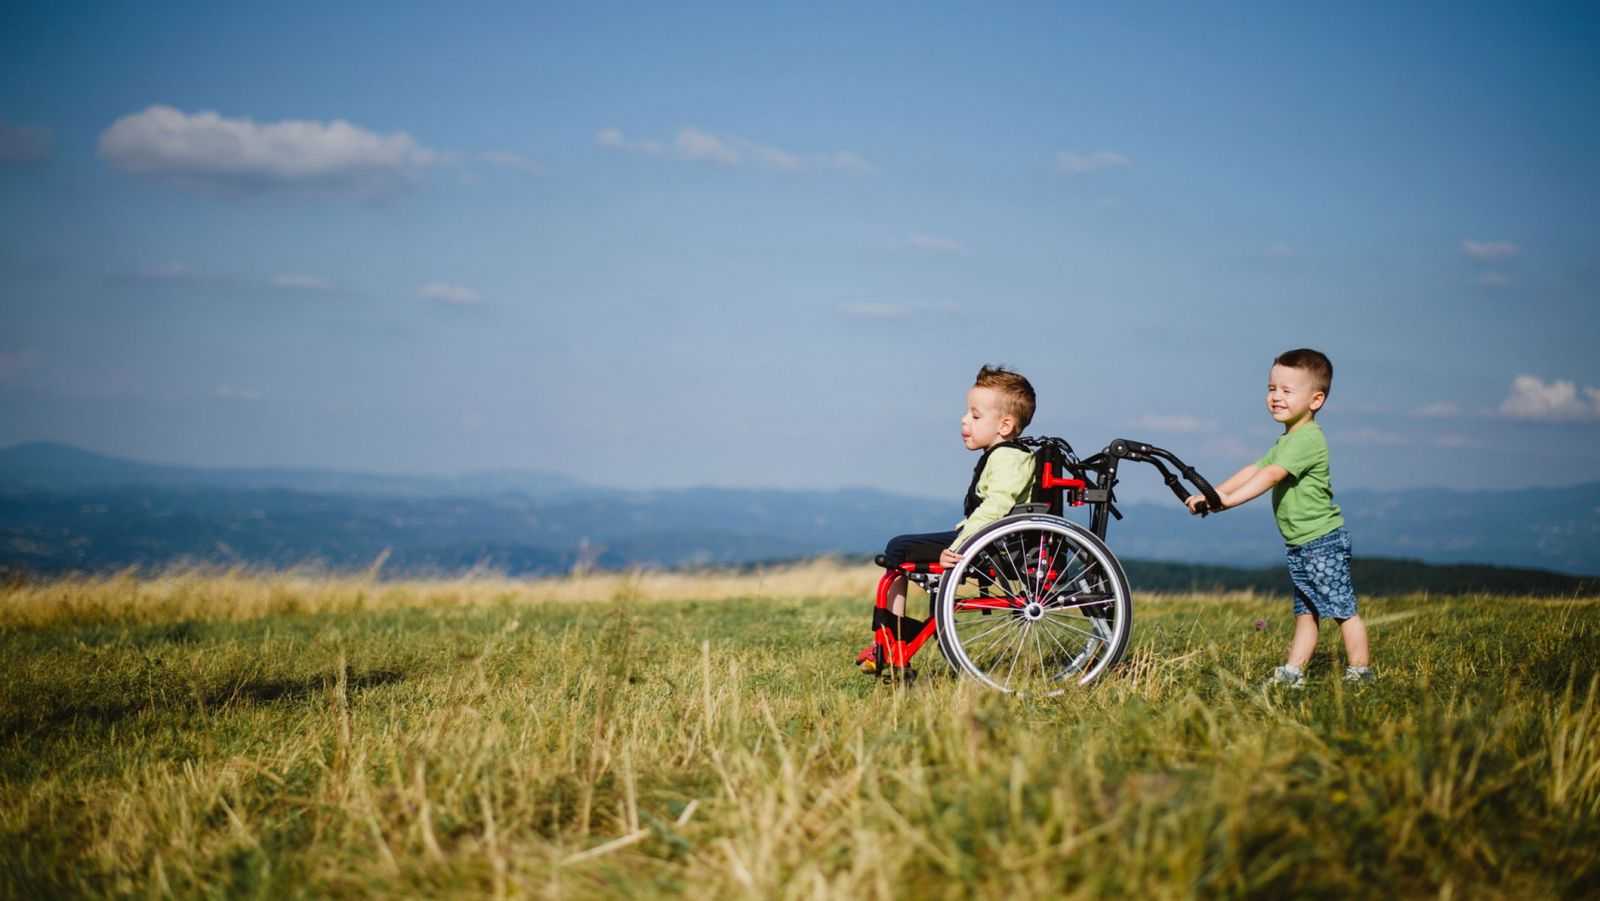 Buenas noticias de la semana del 19 al 25 de febrero.  El pequeño Unai, con parálisis cerebral, ha disfrutado de un día de montaña con sus compañeros de clase gracias a una silla de ruedas especial.